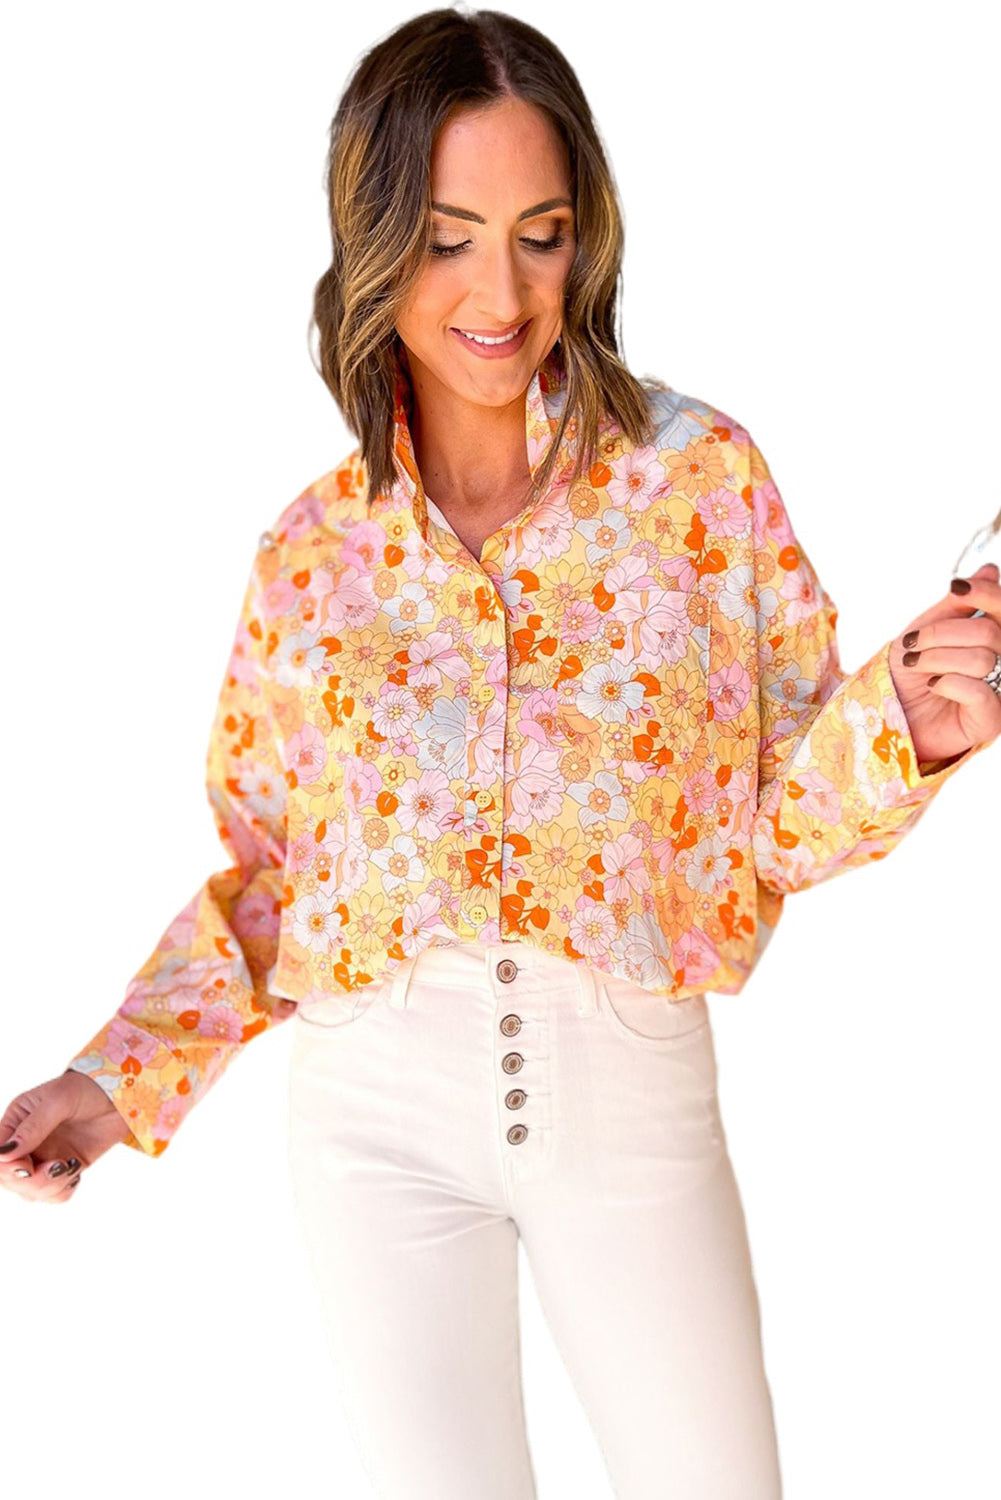 Rumena ohlapna srajca z zavihanim ovratnikom s cvetličnim vzorcem